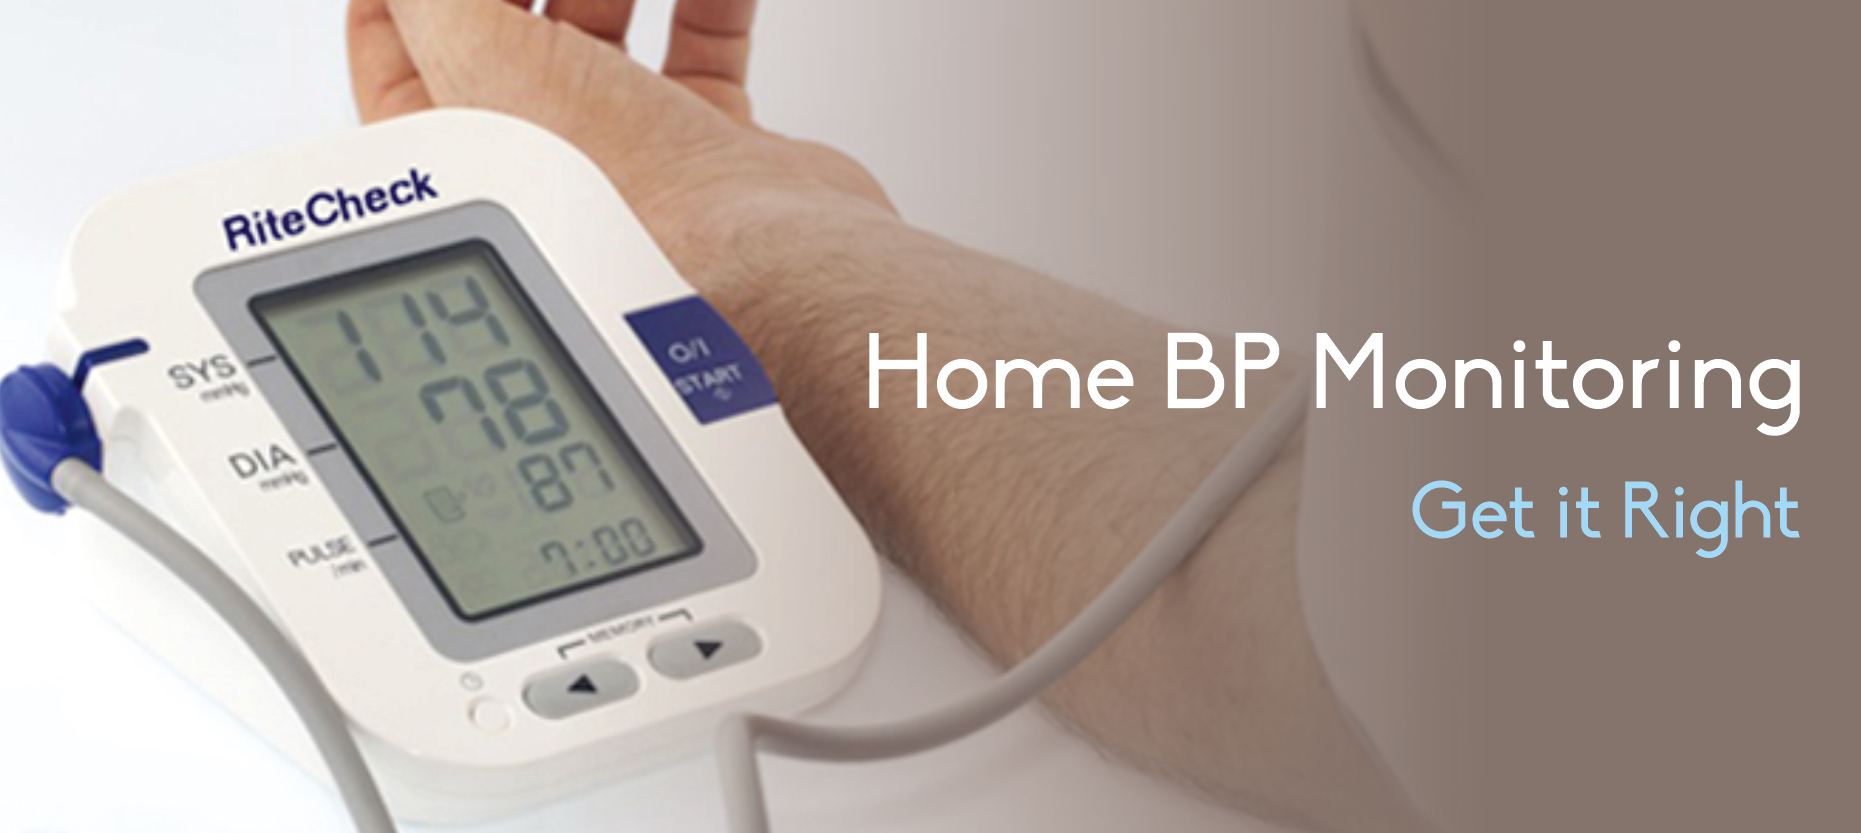 Home BP Monitoring